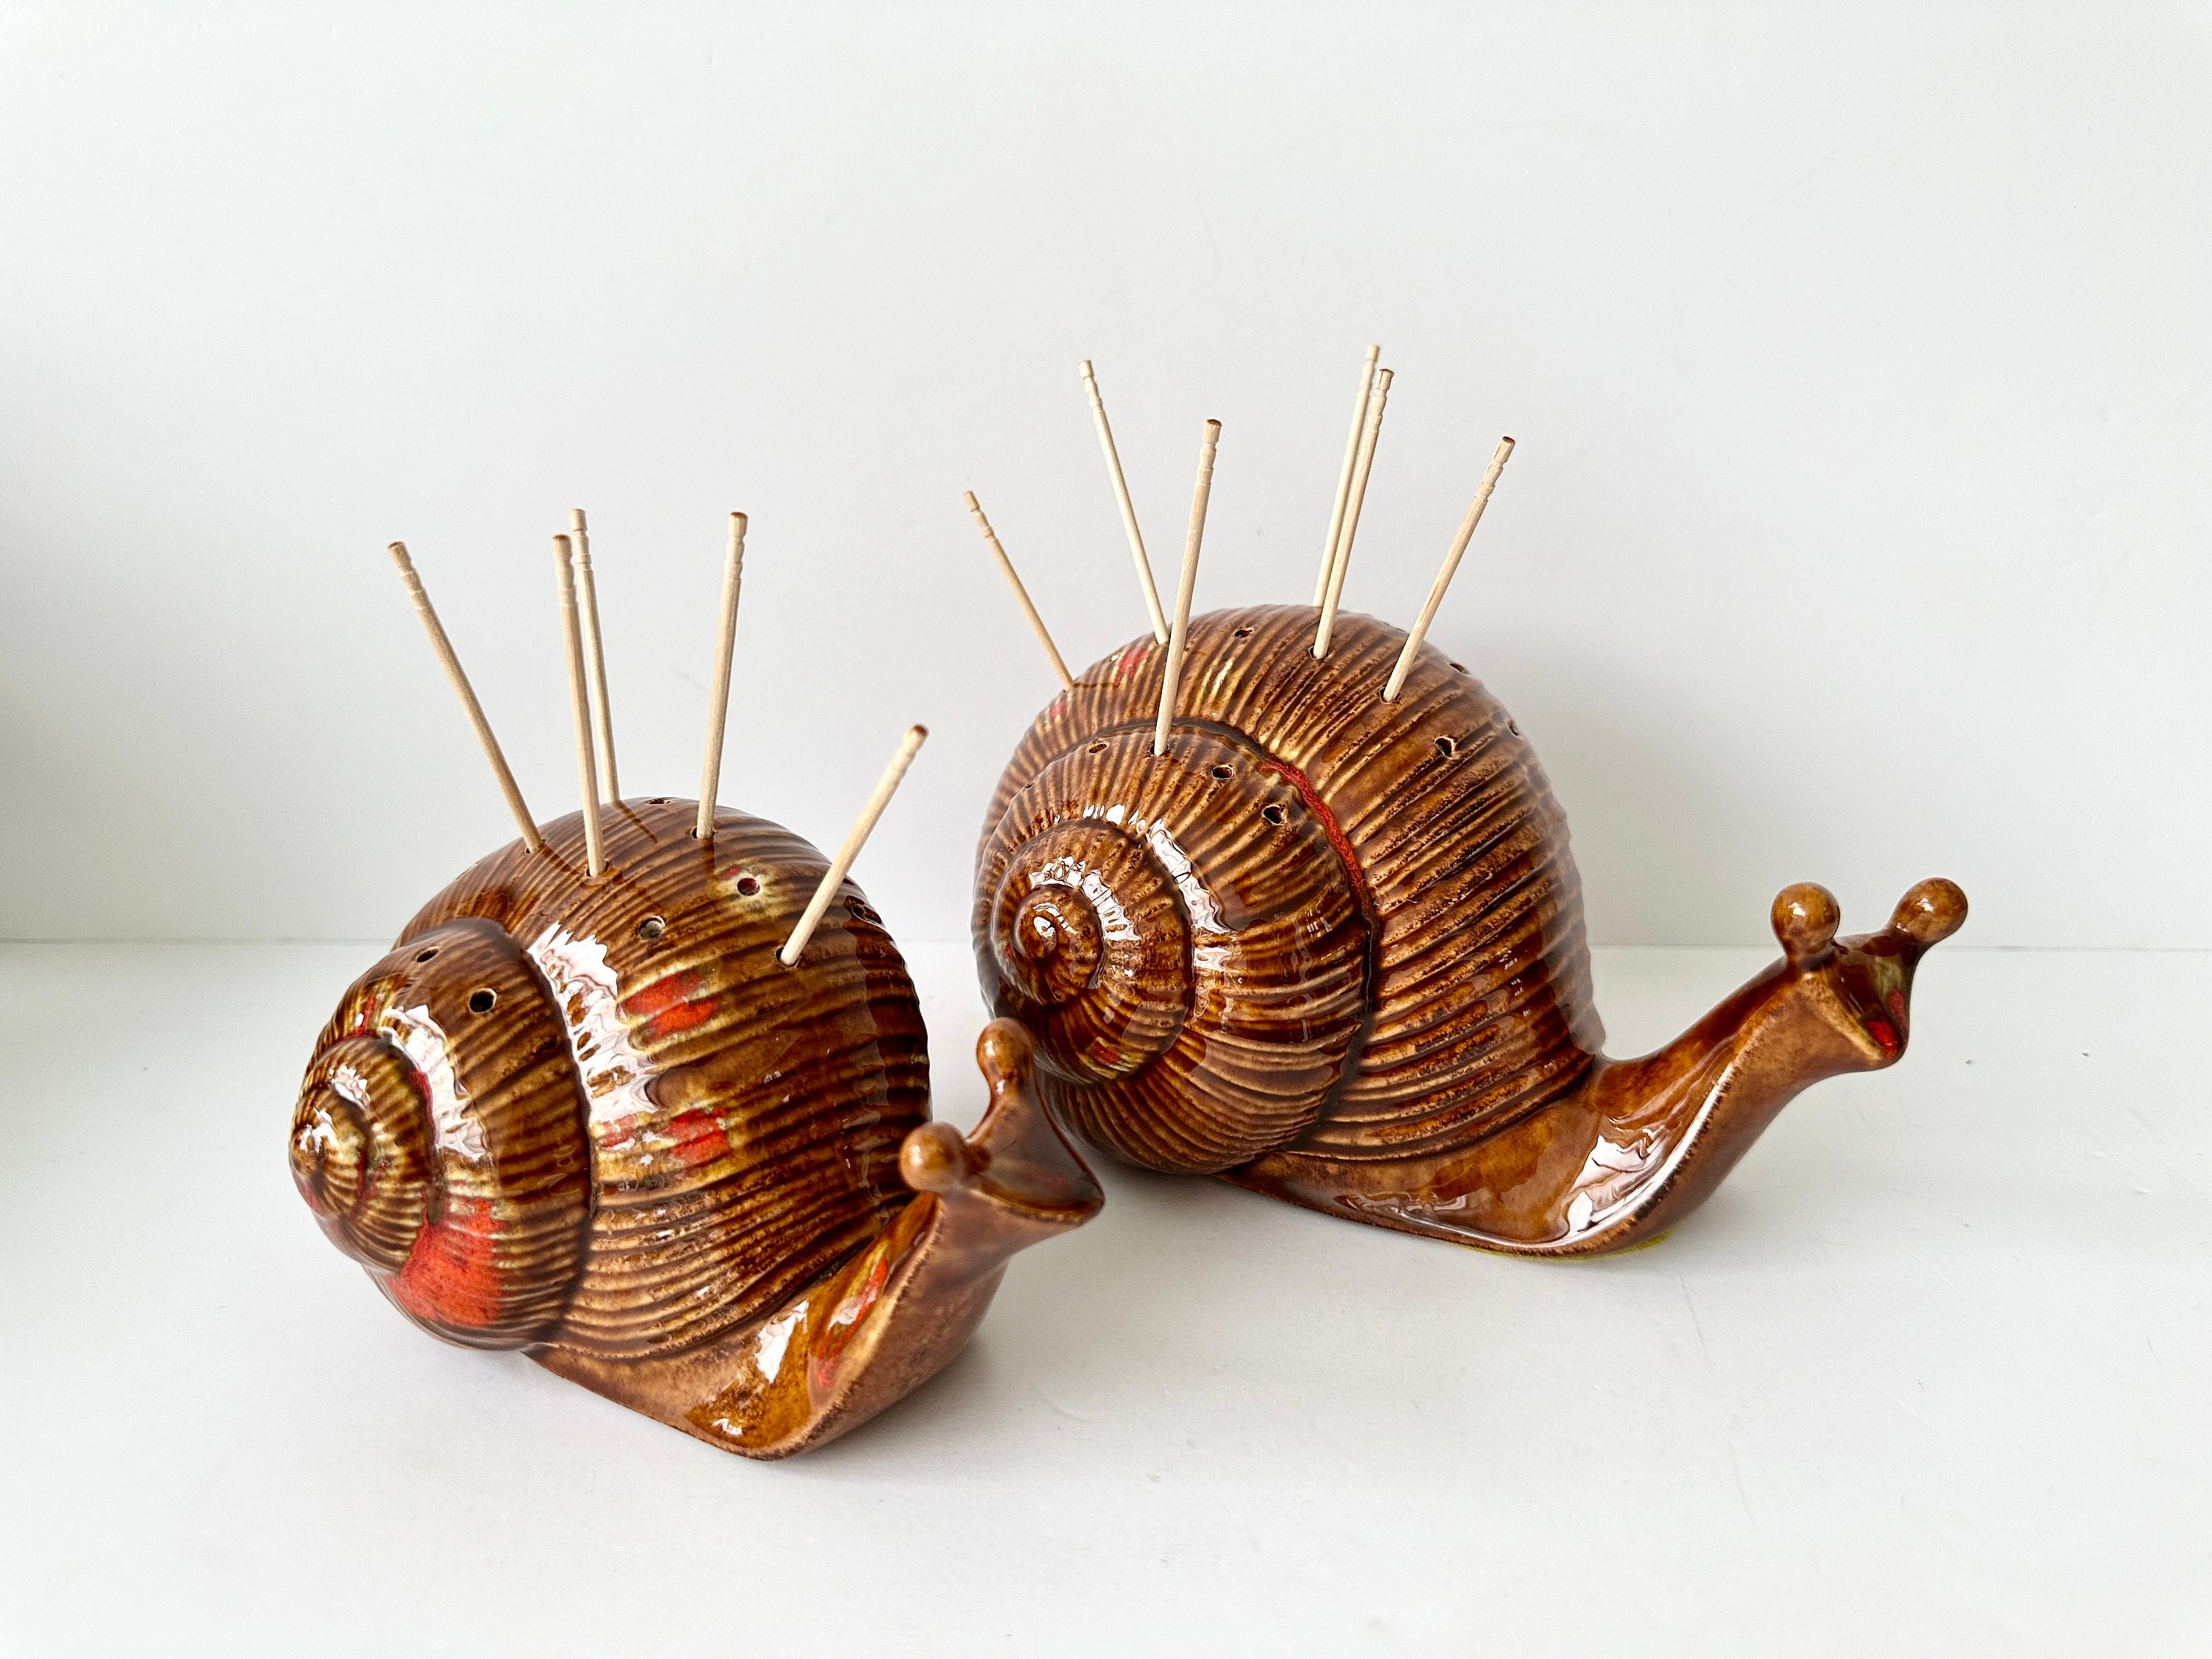 2 Vintage Ceramic Snail Figurines Drip Glazed White Red Orange Garden Decor